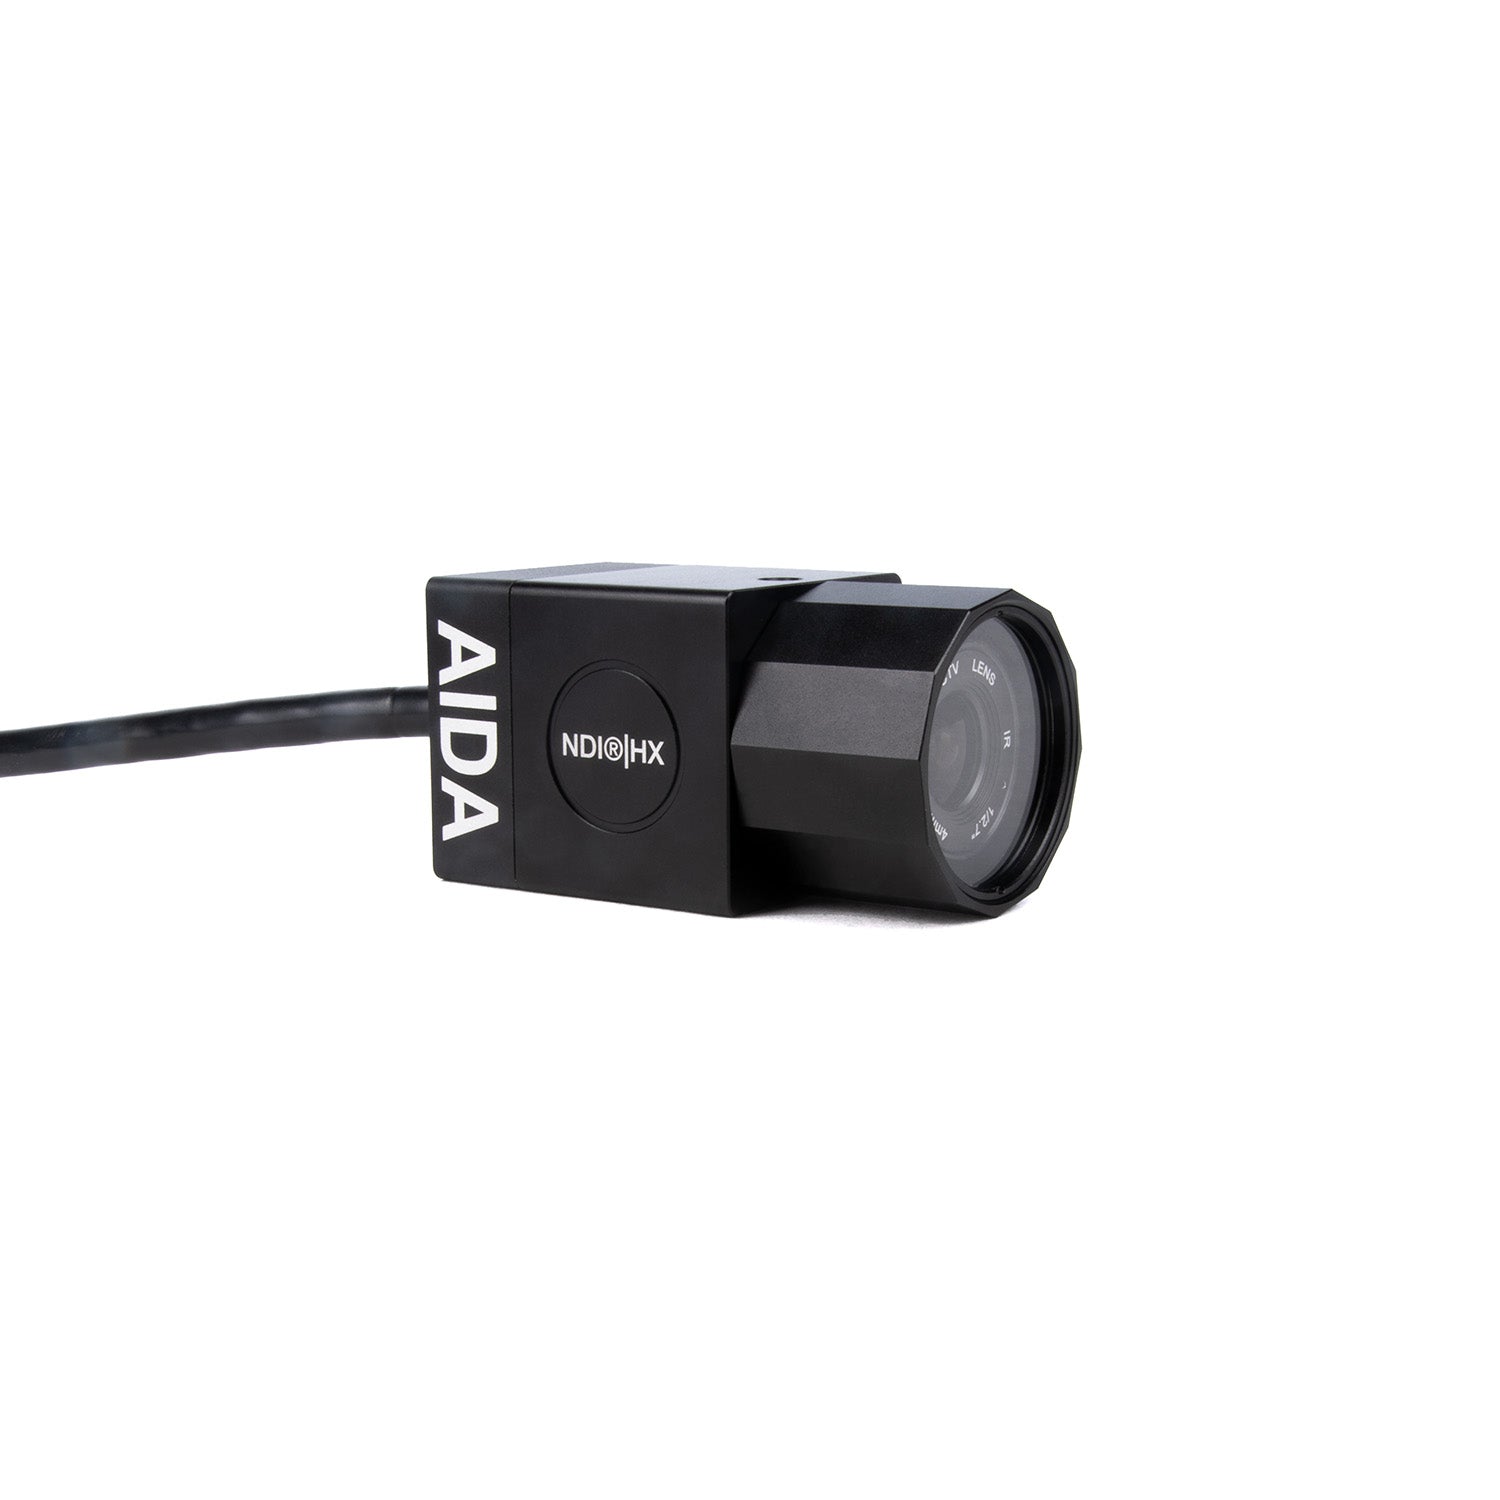 AIDA Imaging HD-NDI-IP67 - HD NDI|HX Weatherproof POV Camera, right